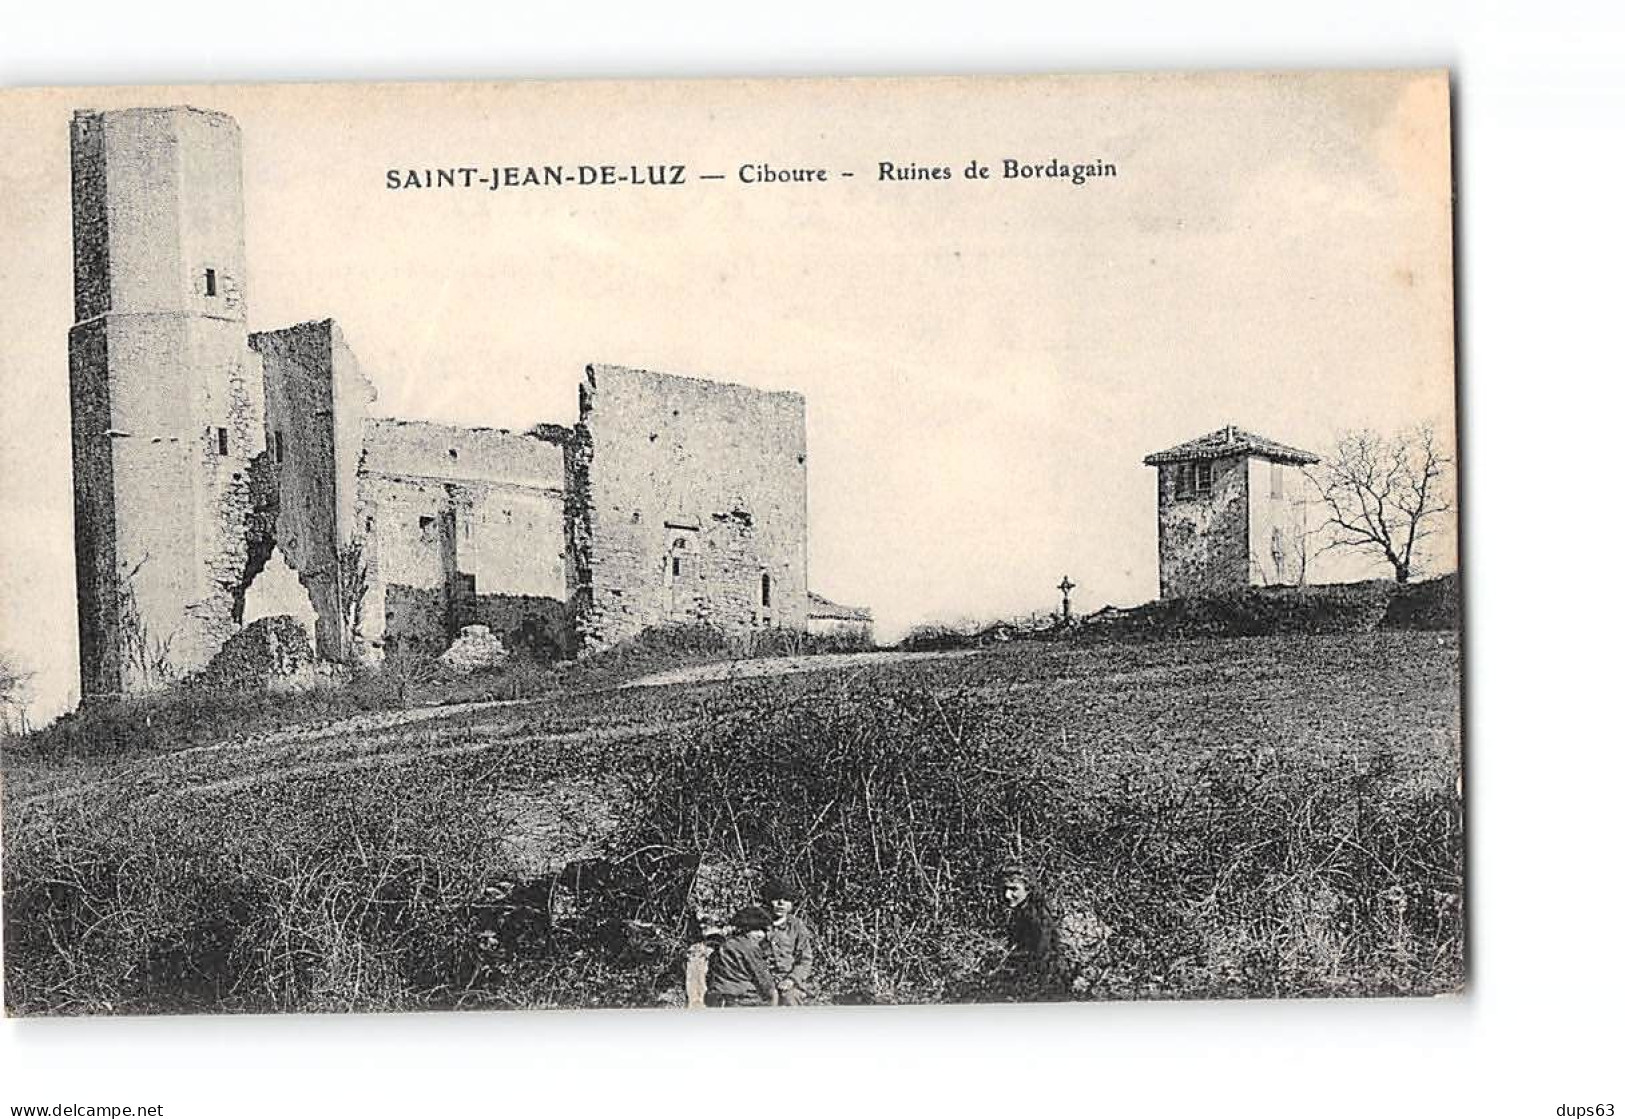 SAINT JEAN DE LUZ - CIBOURE - Ruines De Bordagain - Très Bon état - Saint Jean De Luz